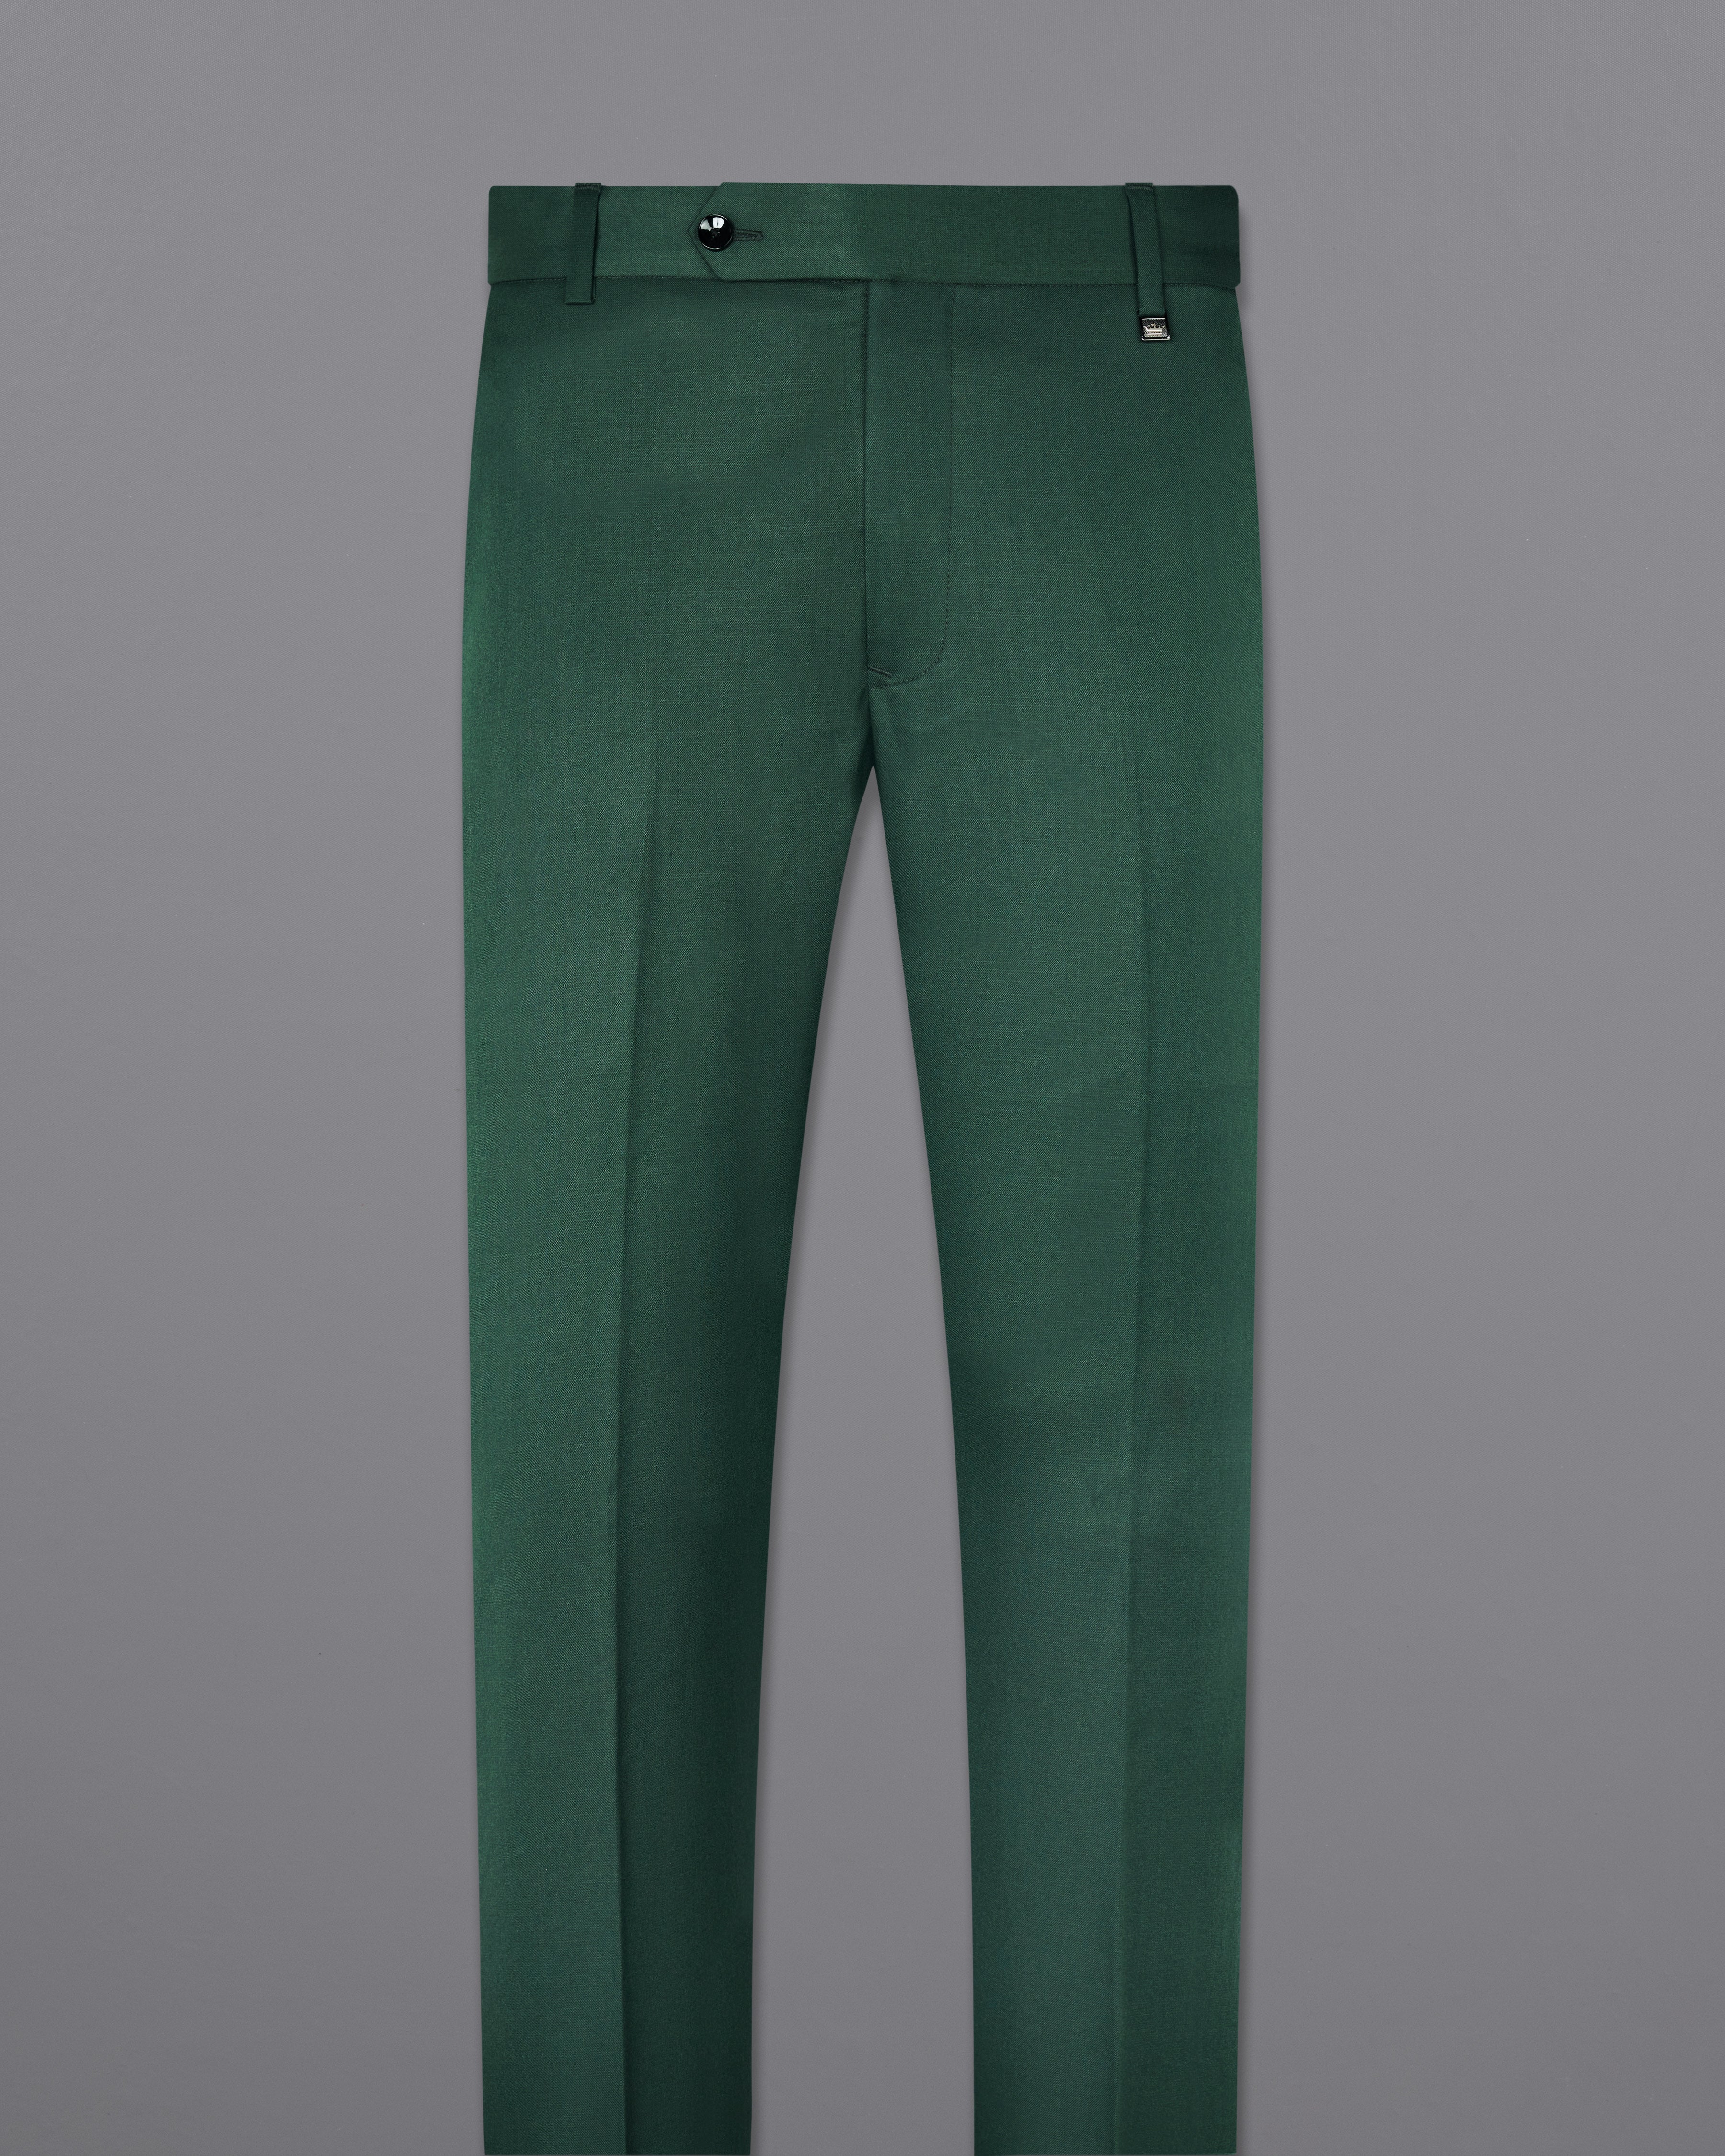 Green Pants High Waist Elegant | Green Business Pants Women | Green Pants  Outfit Women - Pants & Capris - Aliexpress